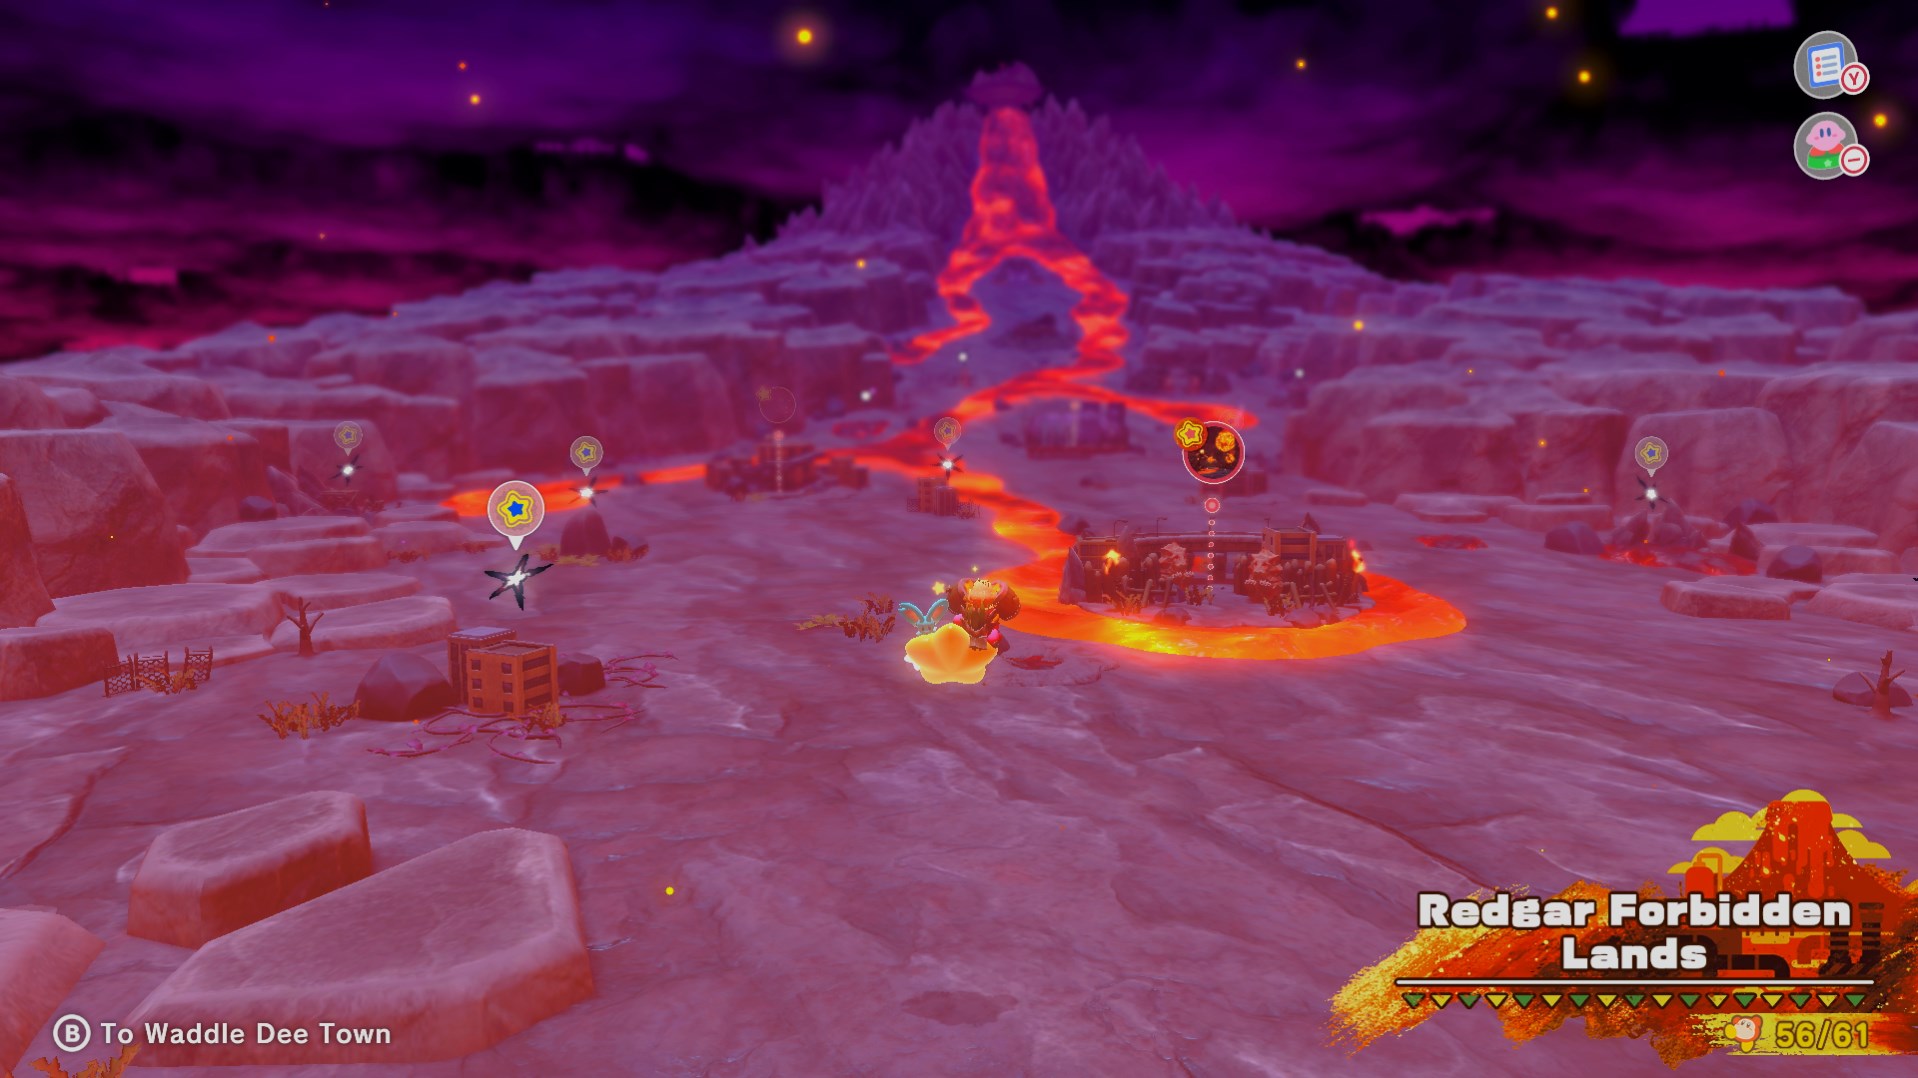 Kirby flies on a warp star above the Redgar Forbidden Lands